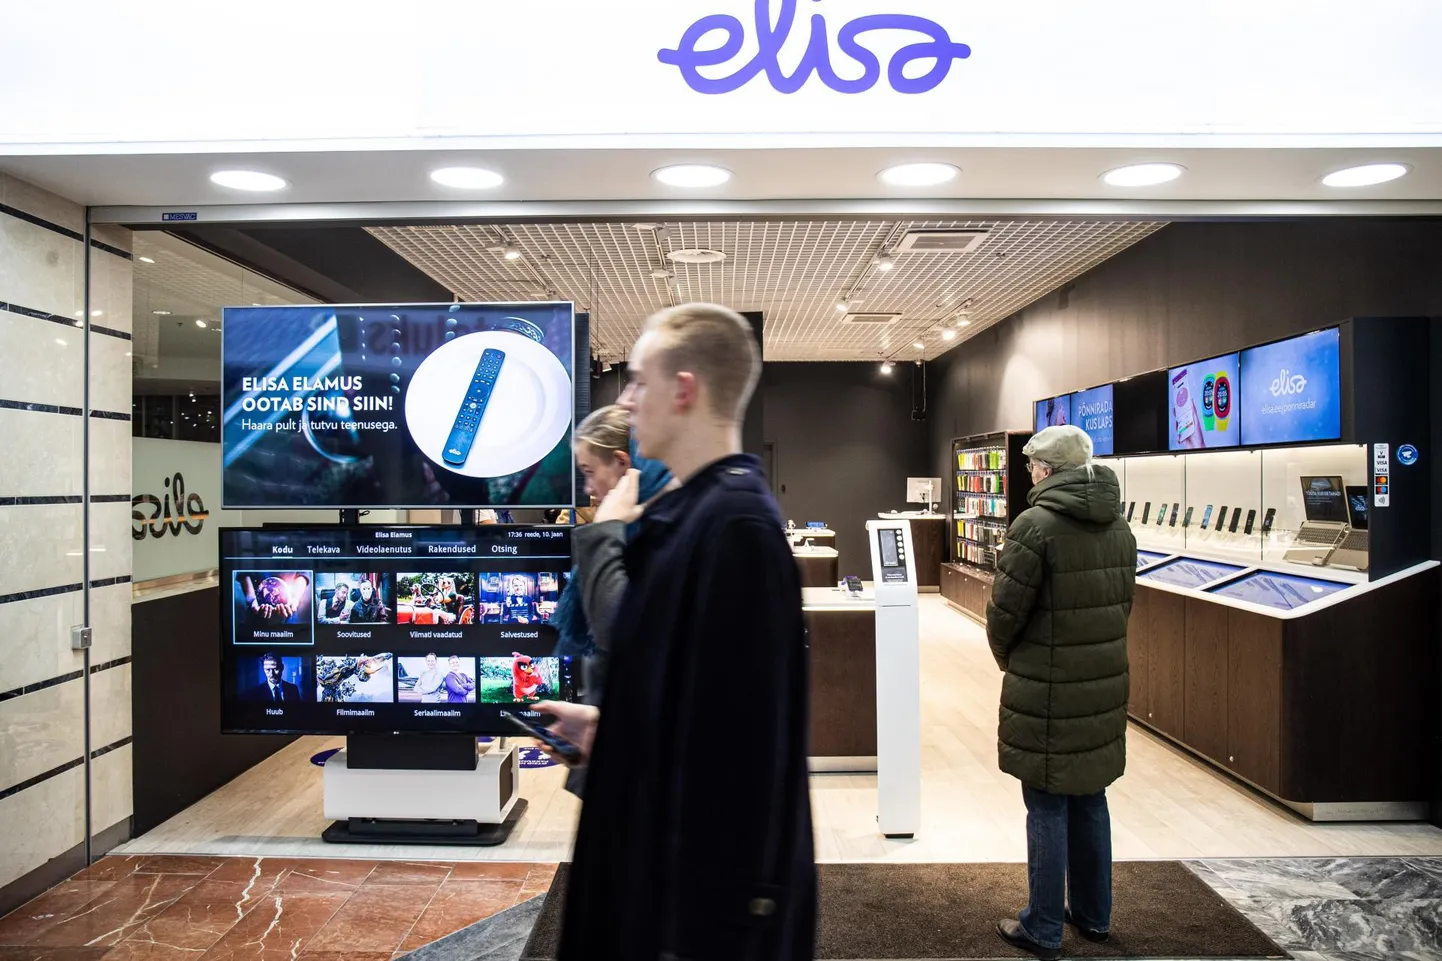 Elisa jõudis oma telekanaliga kiiremini valmis kui Telia. Pildil Elisa esindus Tallinna Viru keskuses.